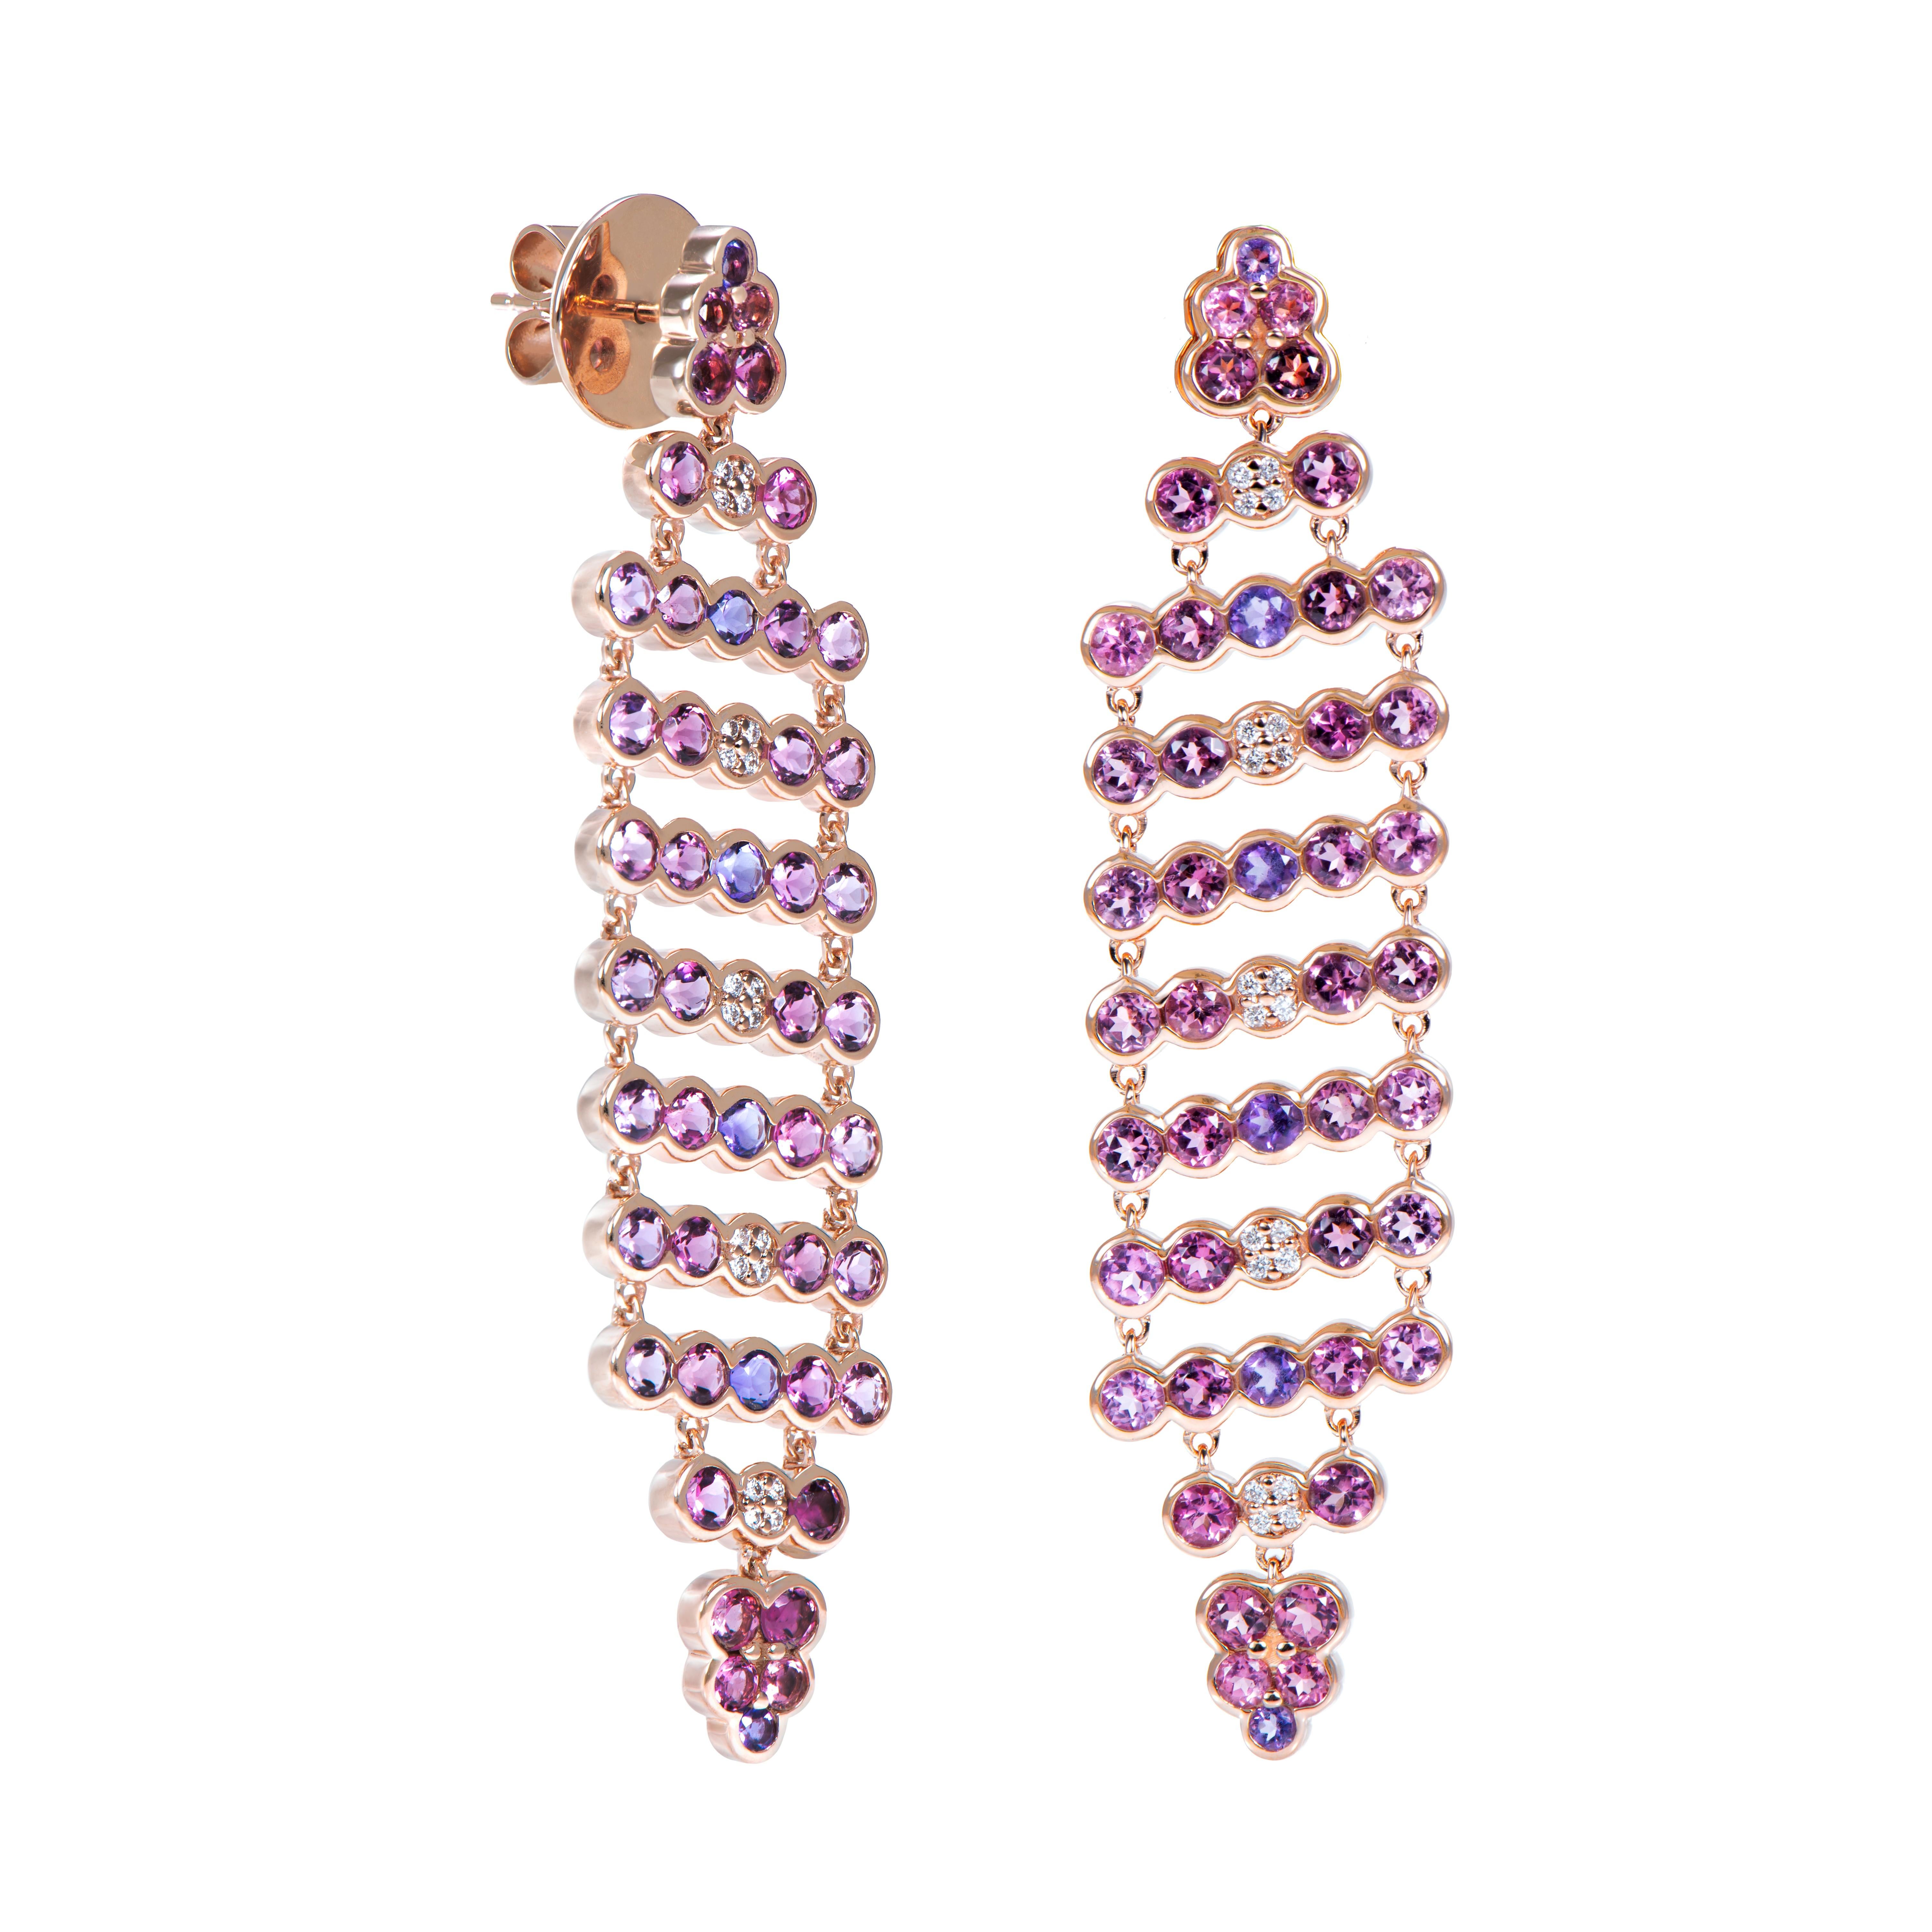 Eine exklusive Kollektion von einzigartigen Designer-Ohrringen von Sunita Nahata Fine Design.
Diese hübschen Paare aus Amethyst, rosa Turmalin und Diamanten sind in Roségold gefasst und passen elegant und stilvoll zu jedem Look.  

Amethyst-Ohrring